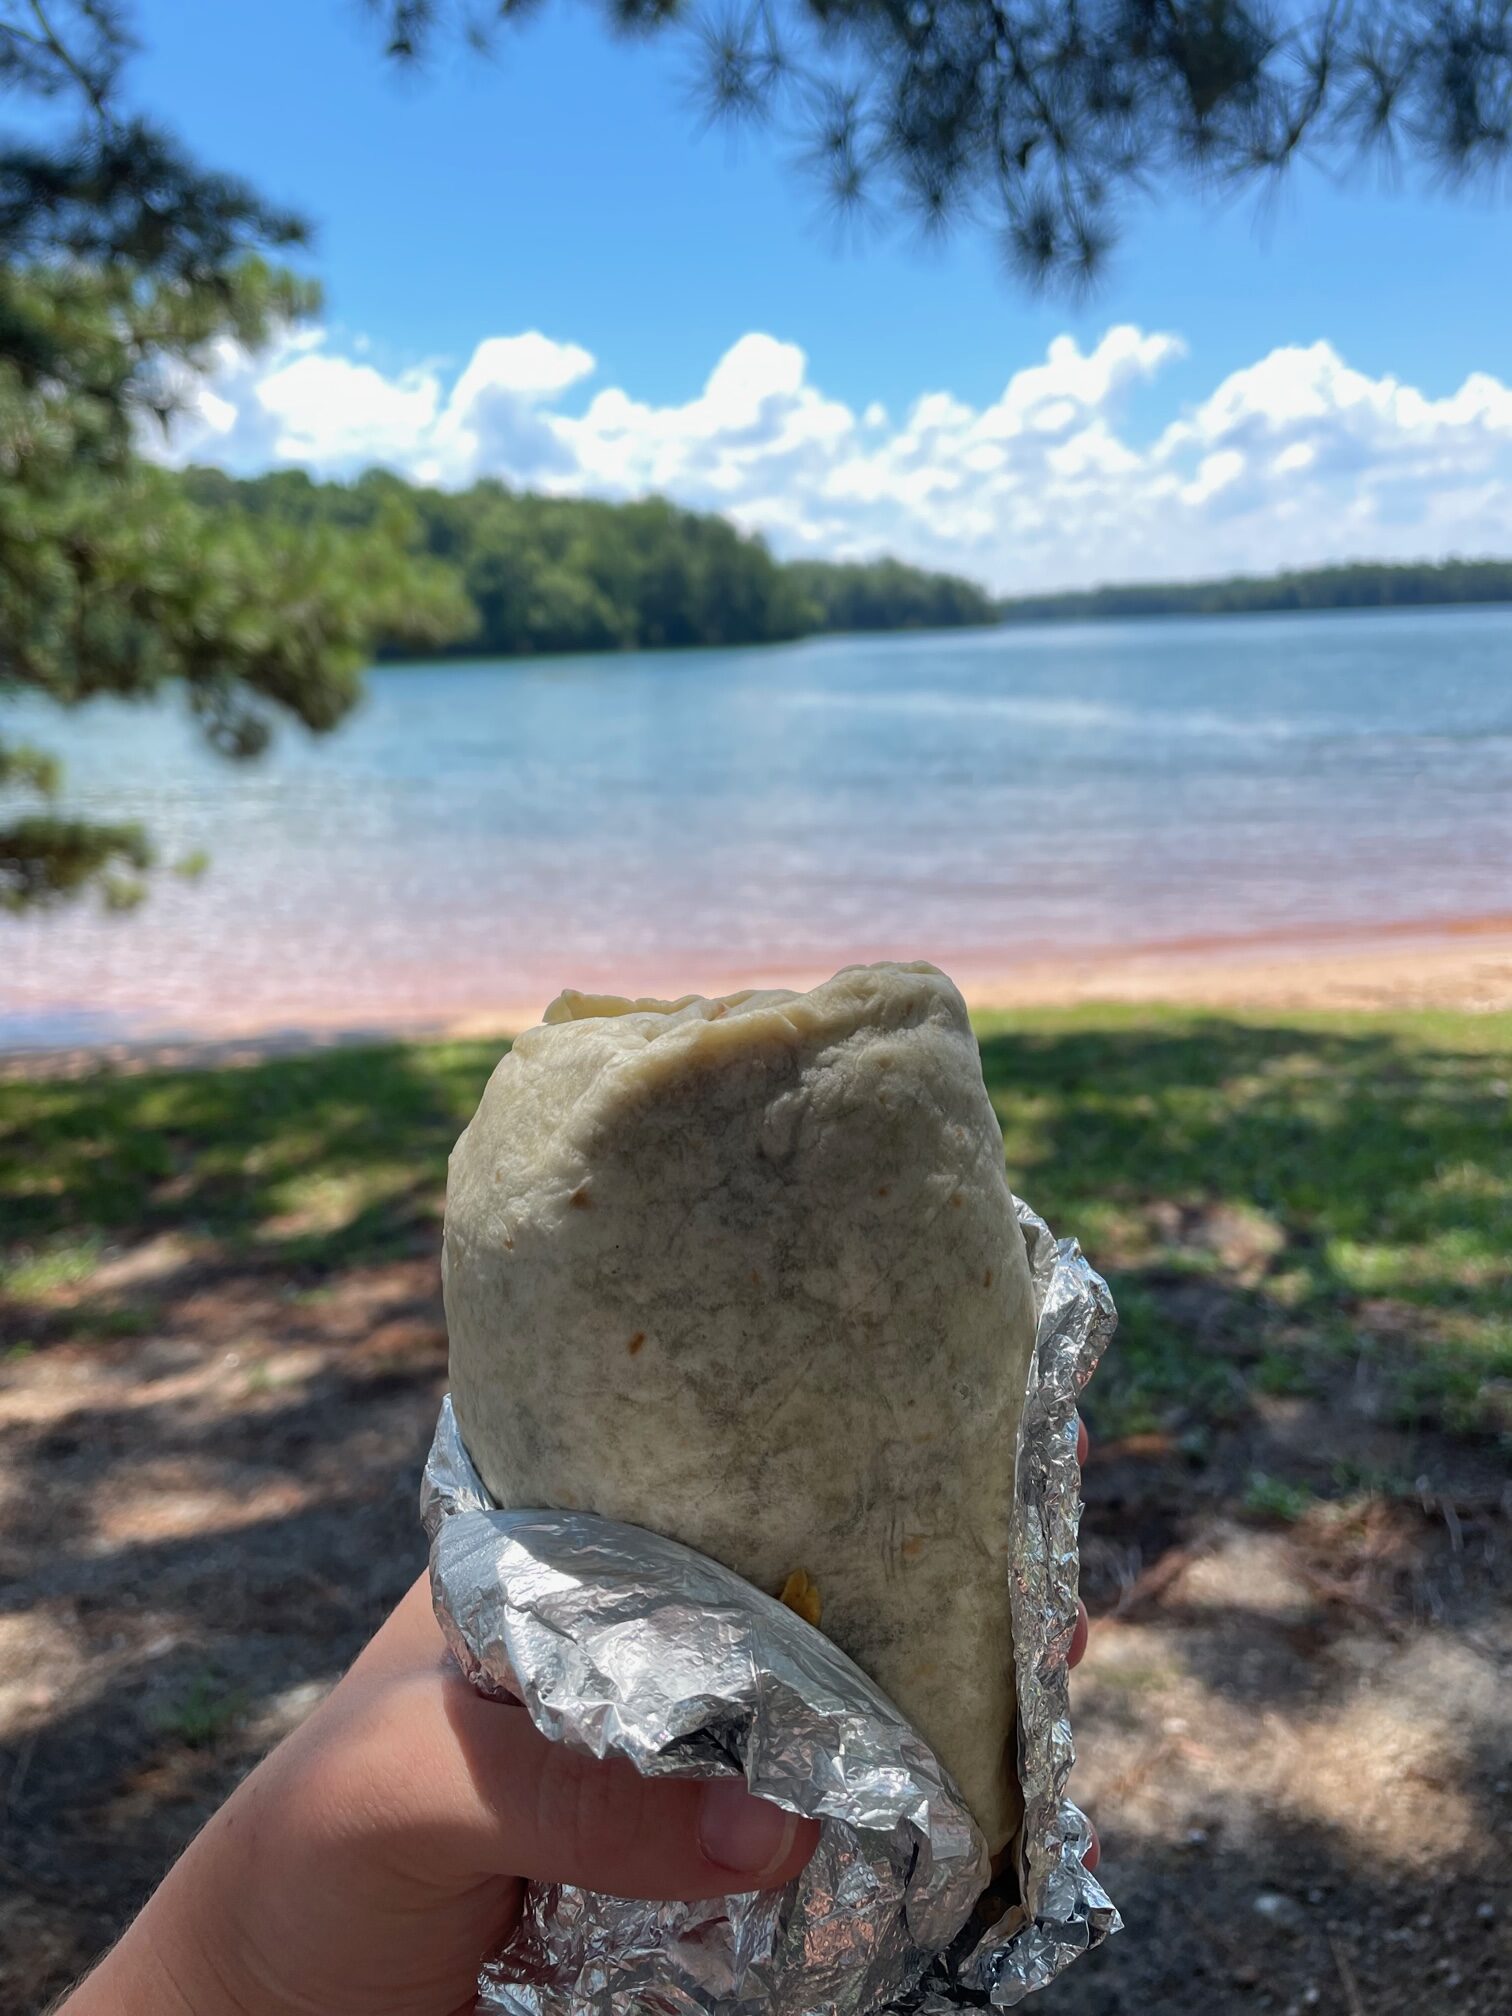 Lake Burrito